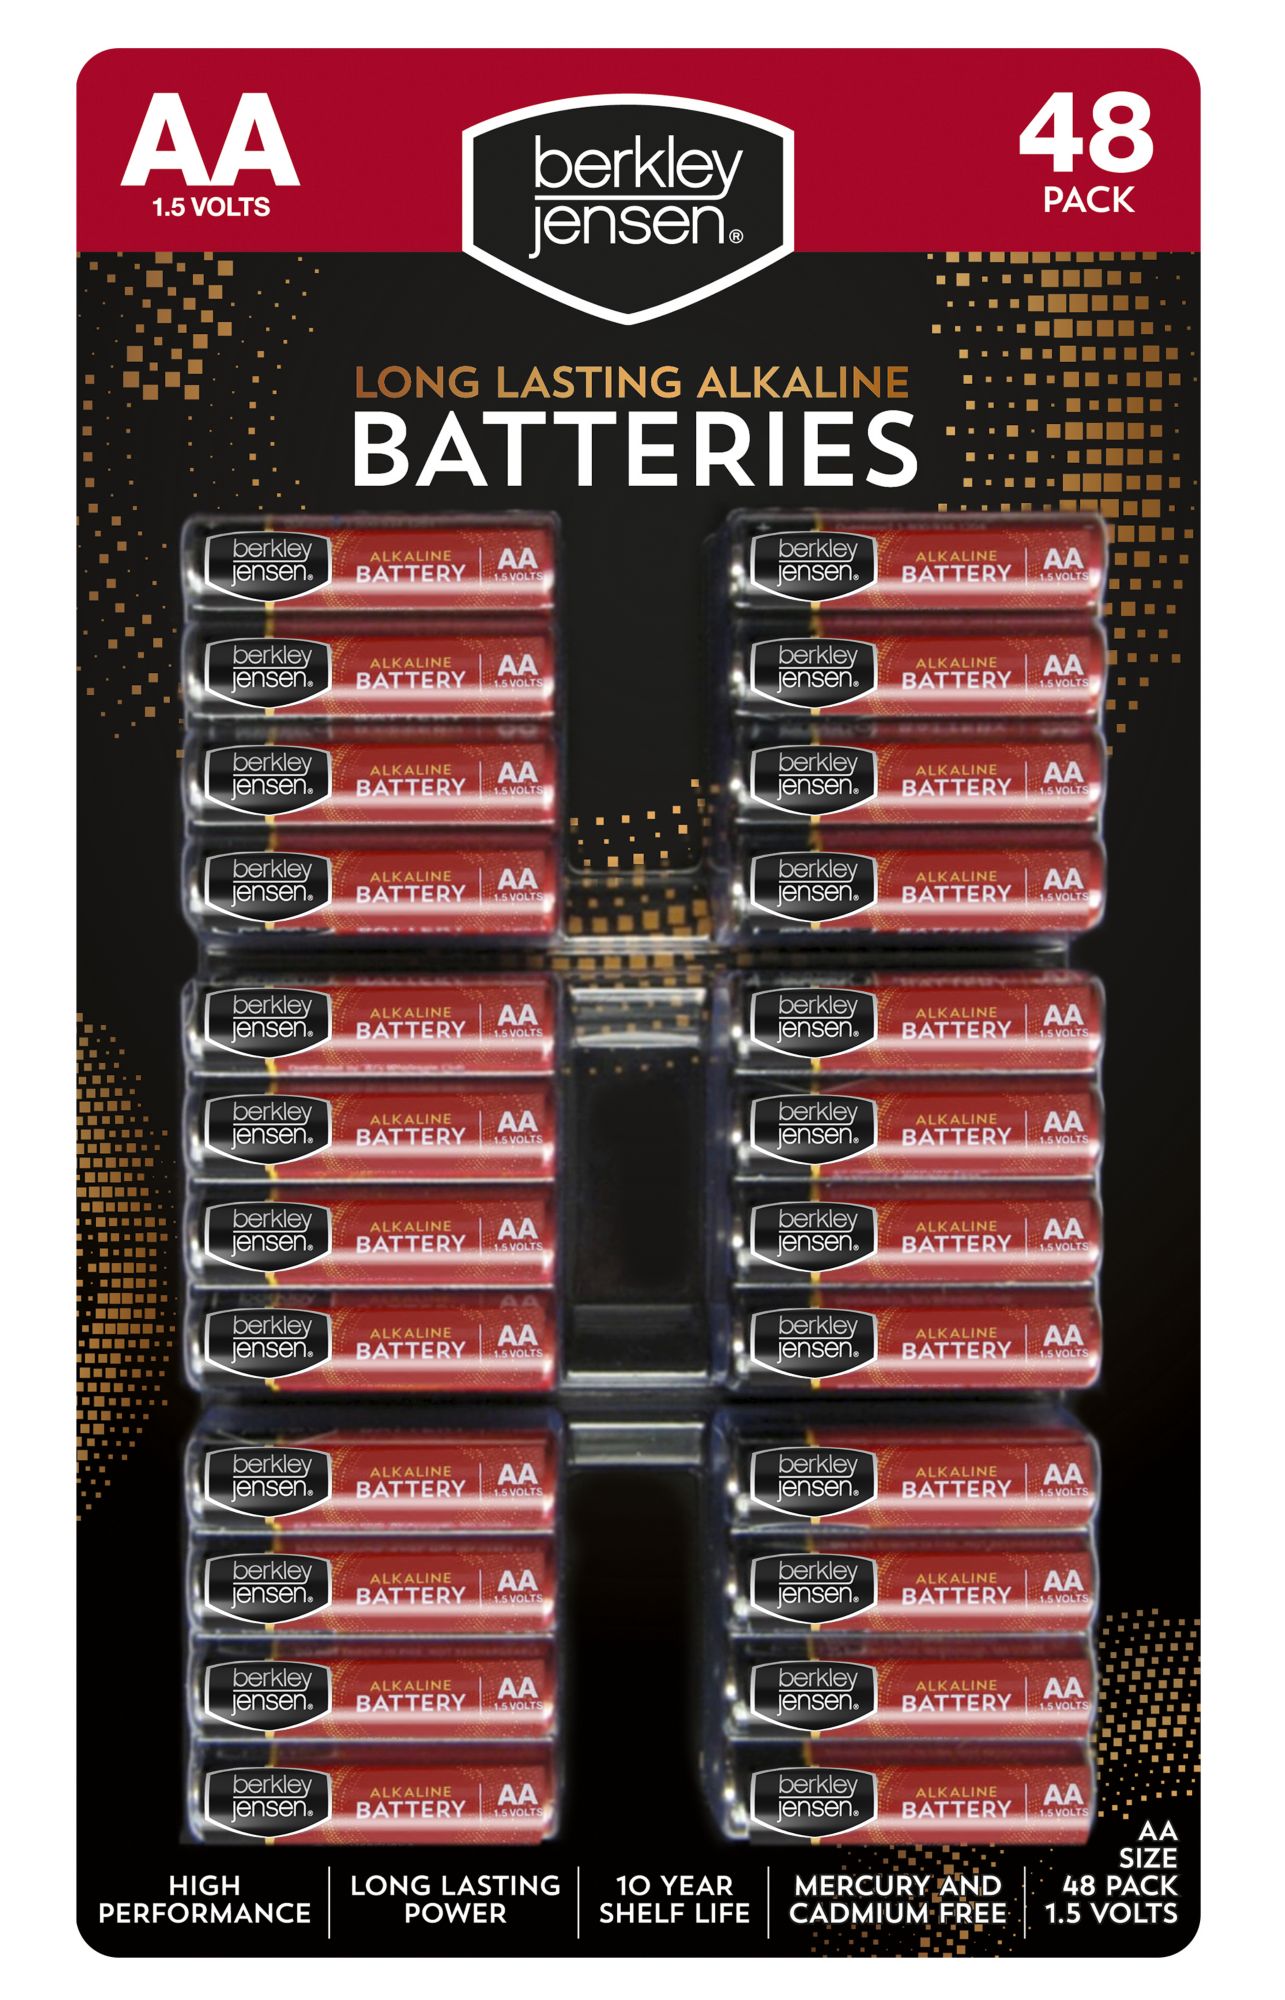 Berkley Jensen AA Alkaline Batteries, 48 ct.